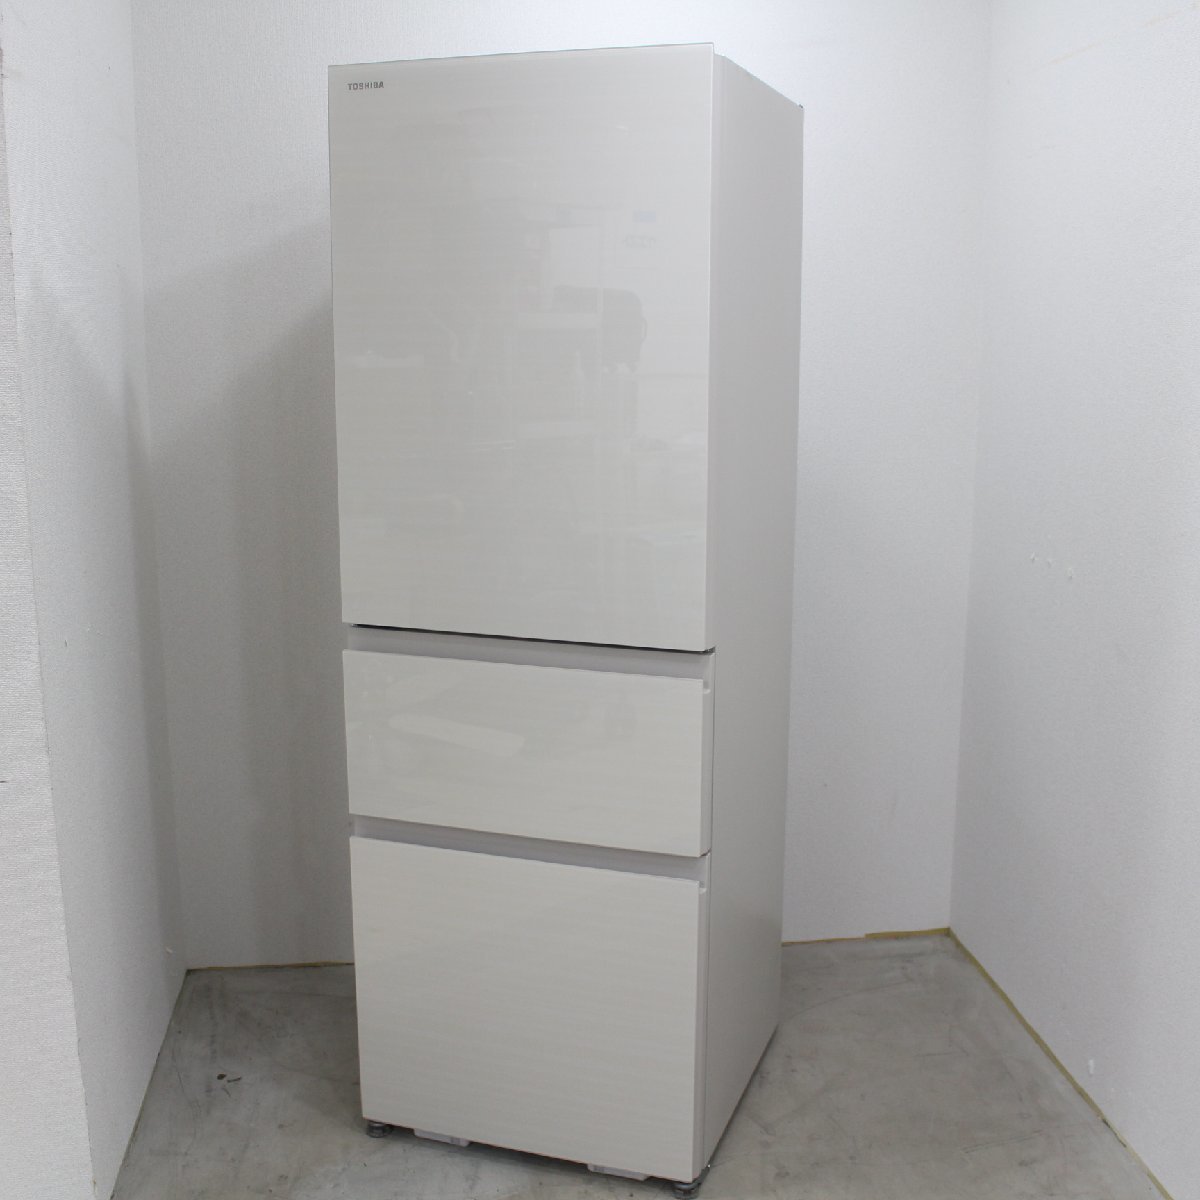 横浜市都筑区にて 東芝 冷蔵庫 GR-T36SVL 2022年製 を出張買取させて頂きました。